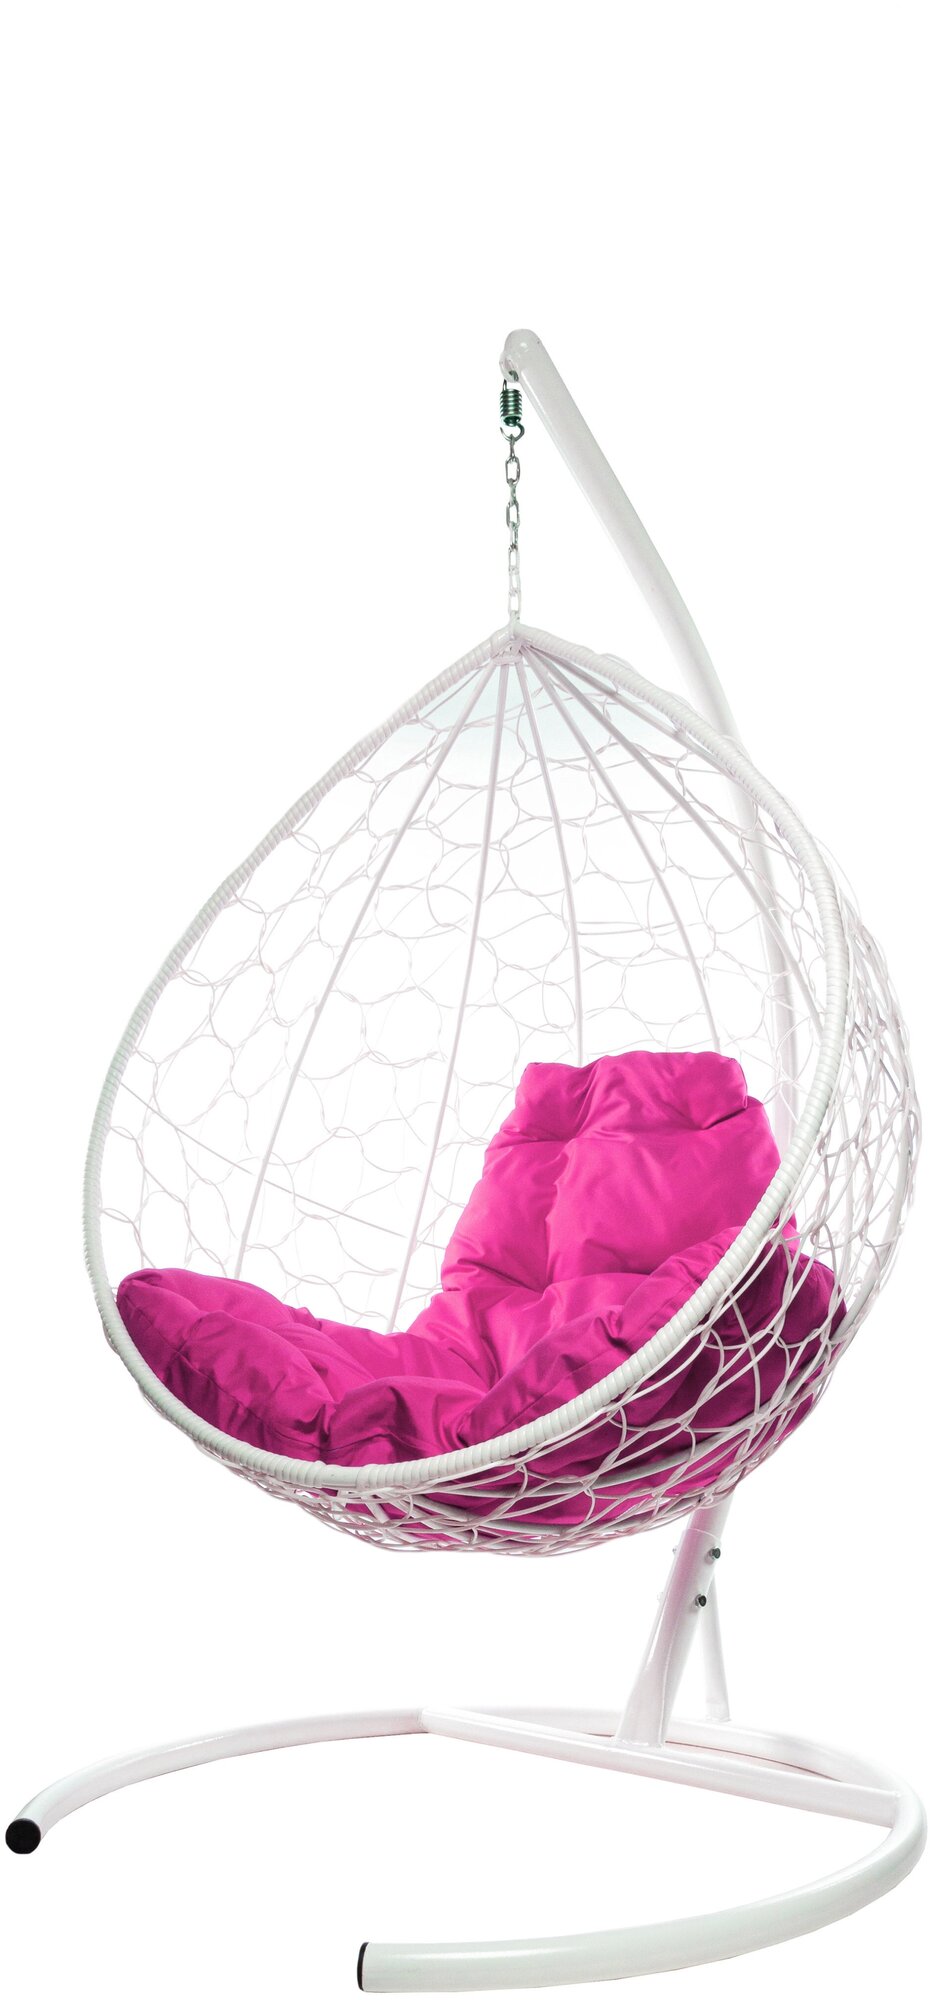 Подвесное кресло m-group капля ротанг белое, розовая подушка - фотография № 1